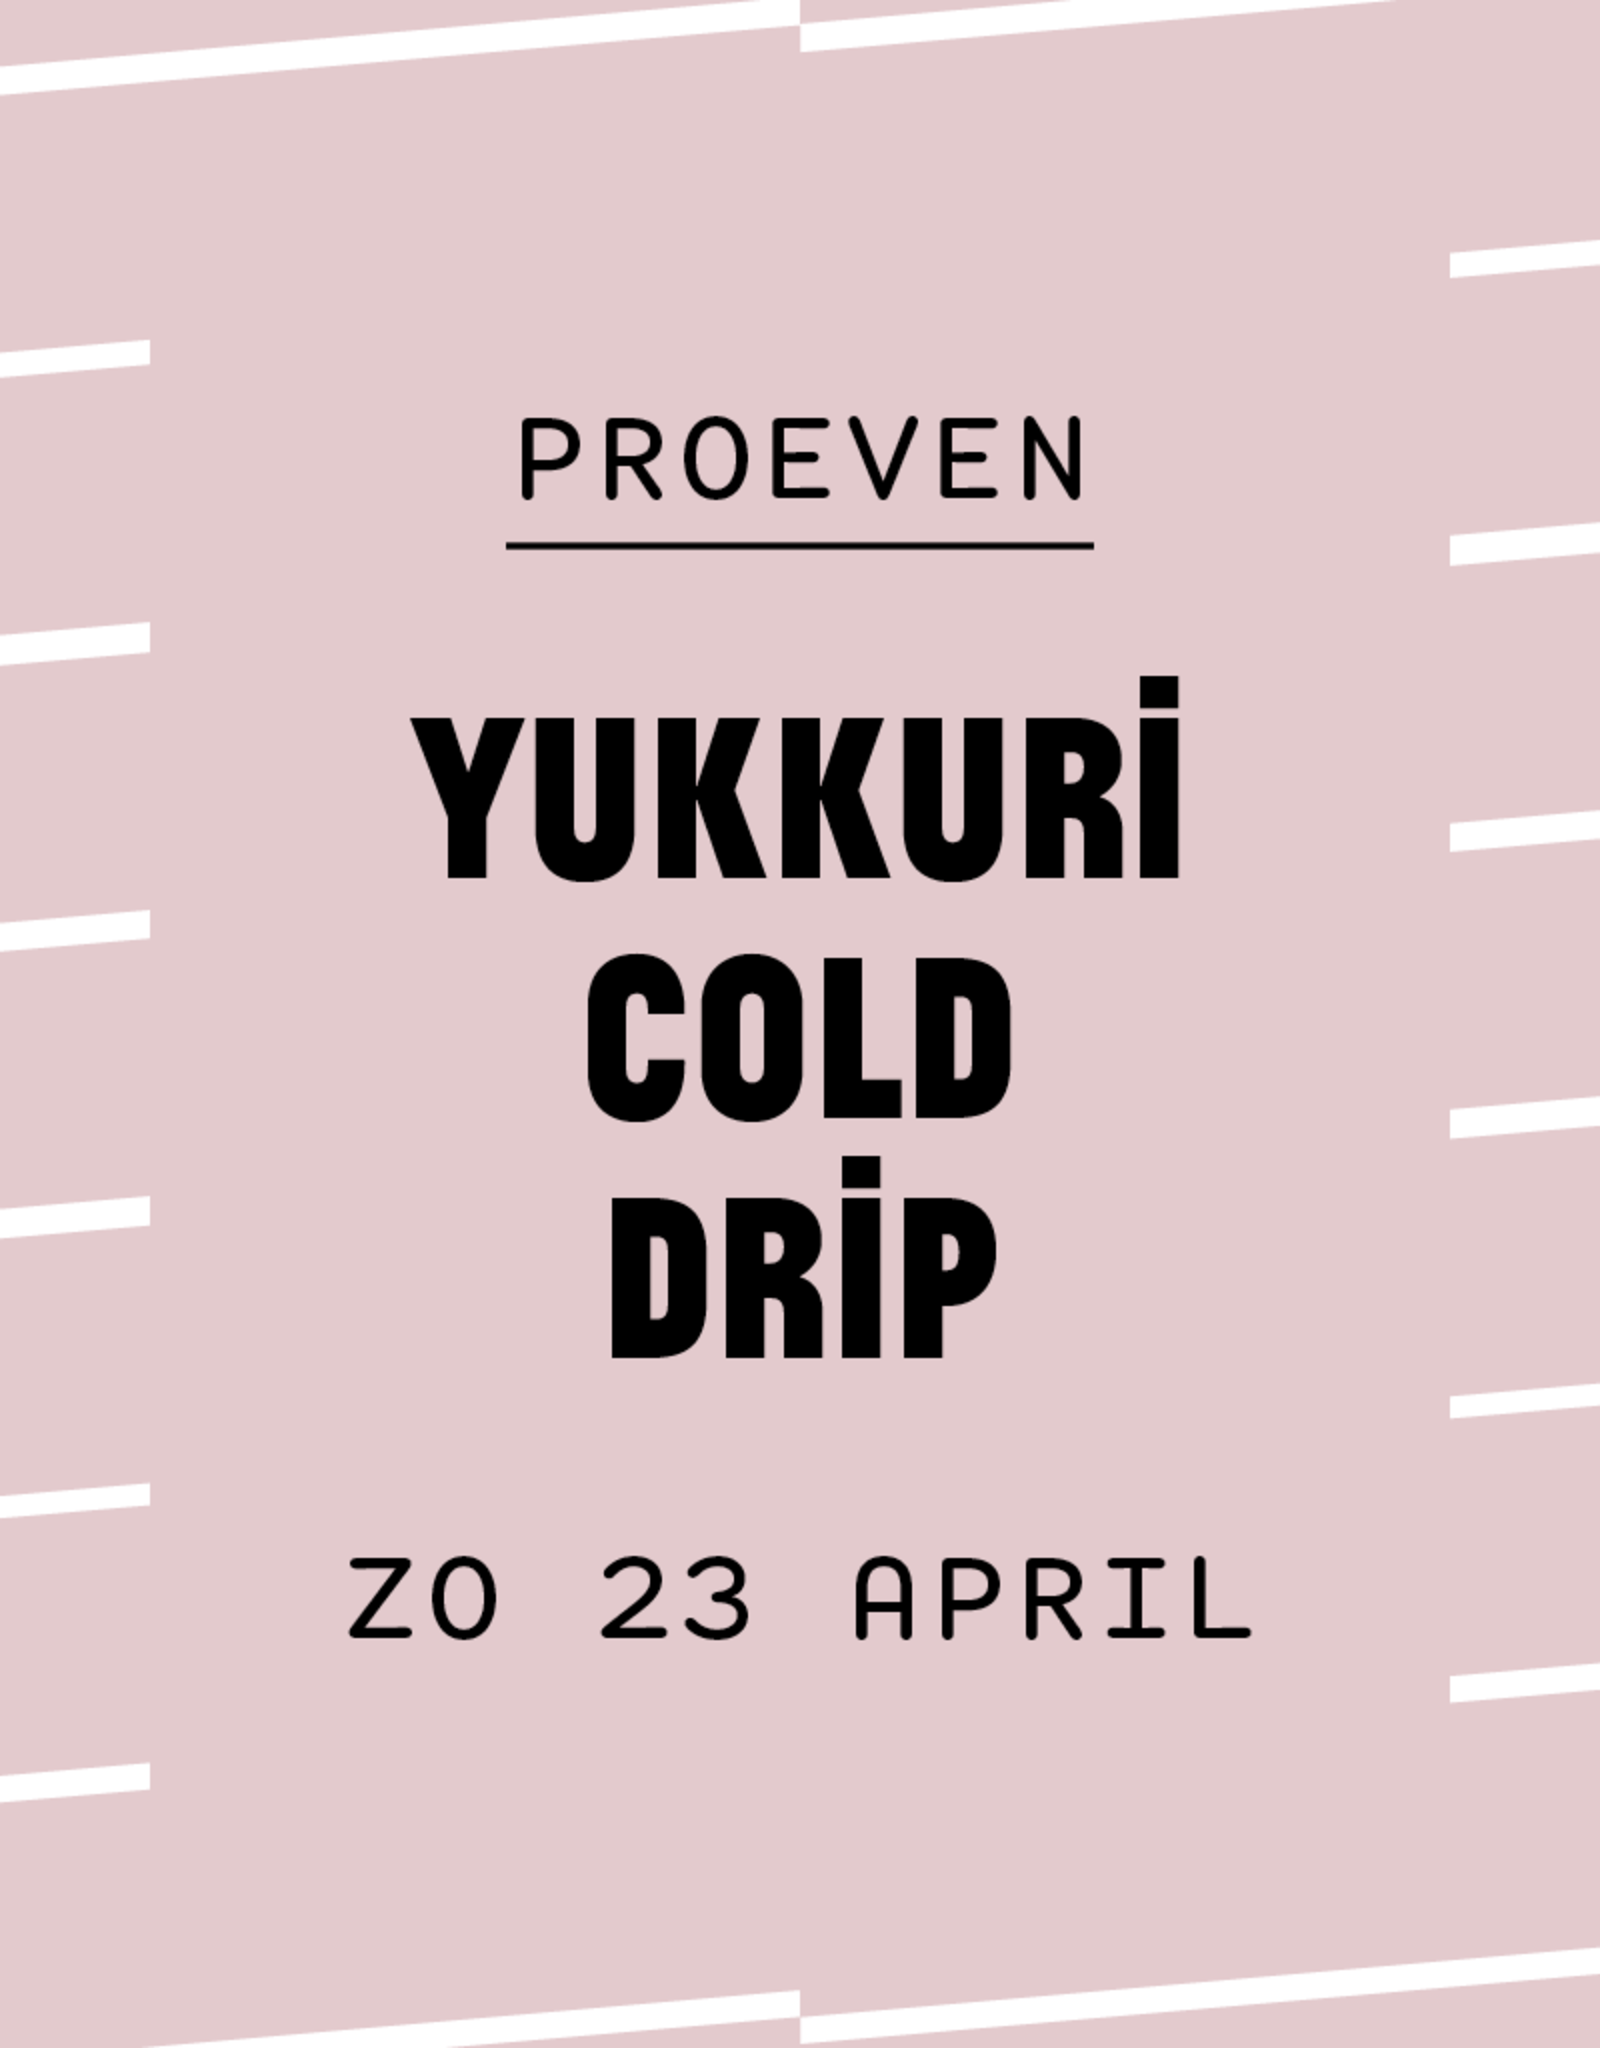 Yukkuri Cold Drip proeven